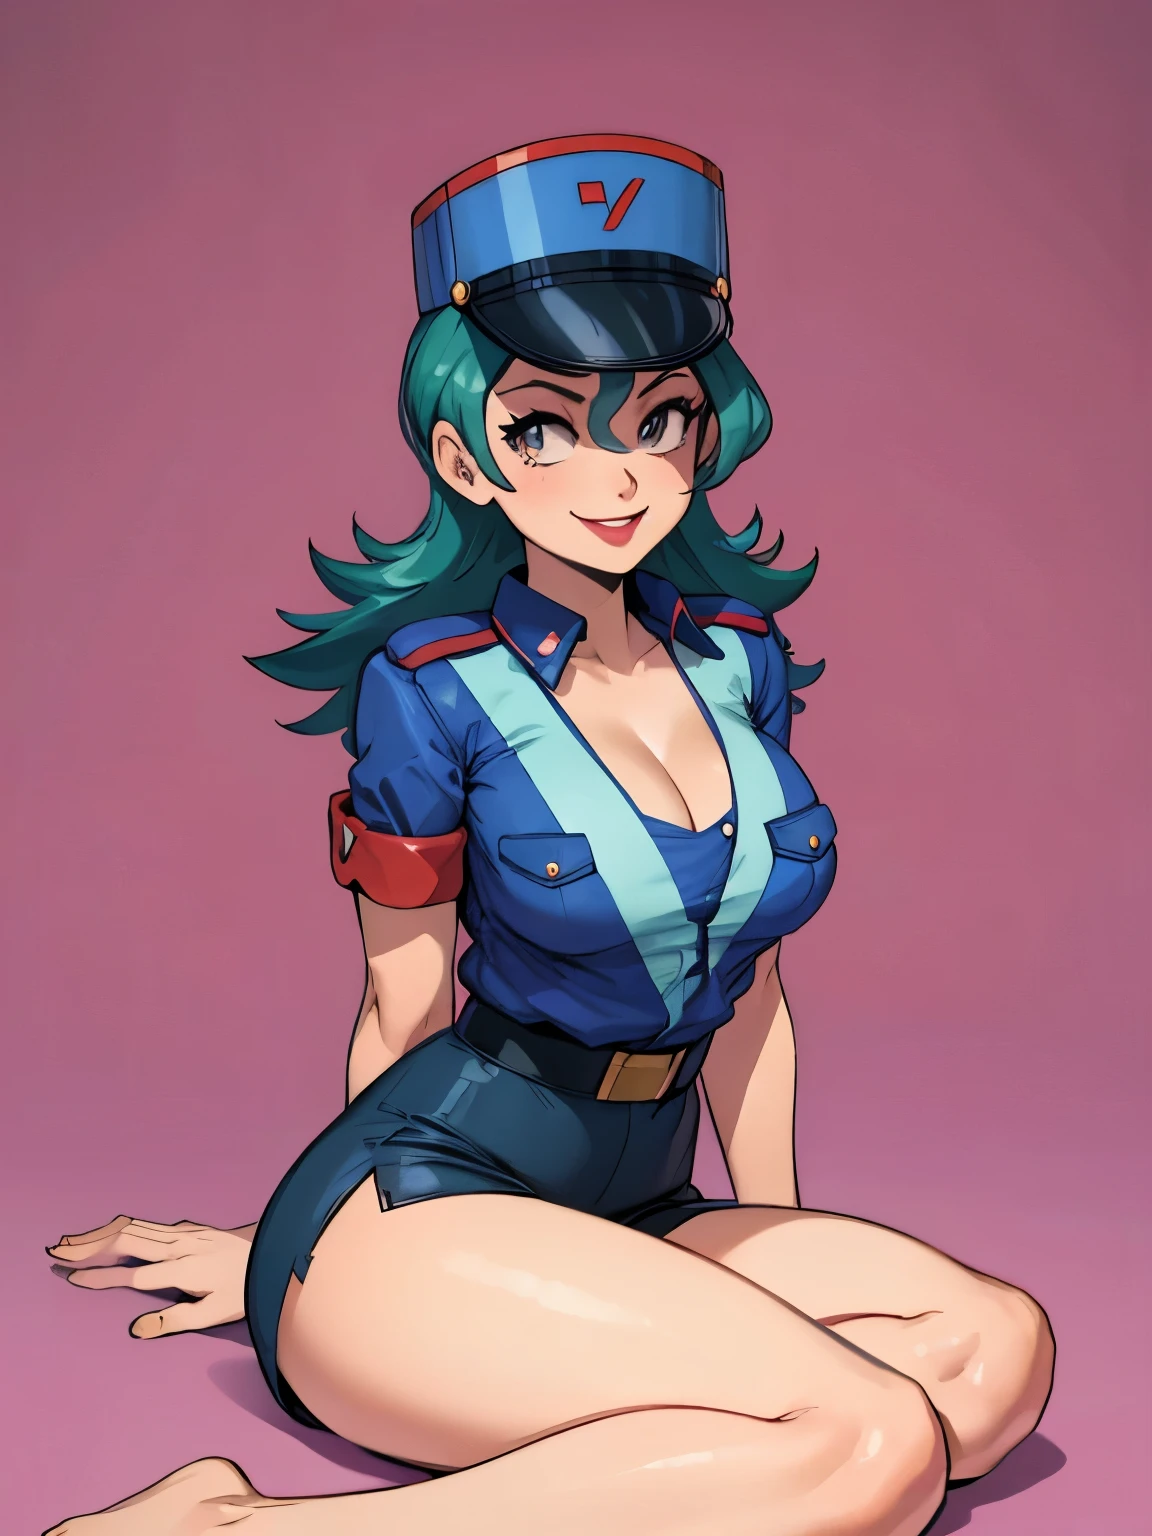 Jenny-pokémon, linda mulher policial, sentado, pernas perfeitas, ((braços atrás das costas)), camisa desabotoada, peituda, decote colossal, batom, sorridente, boné de polícia, ((Fundo simples:1.3))